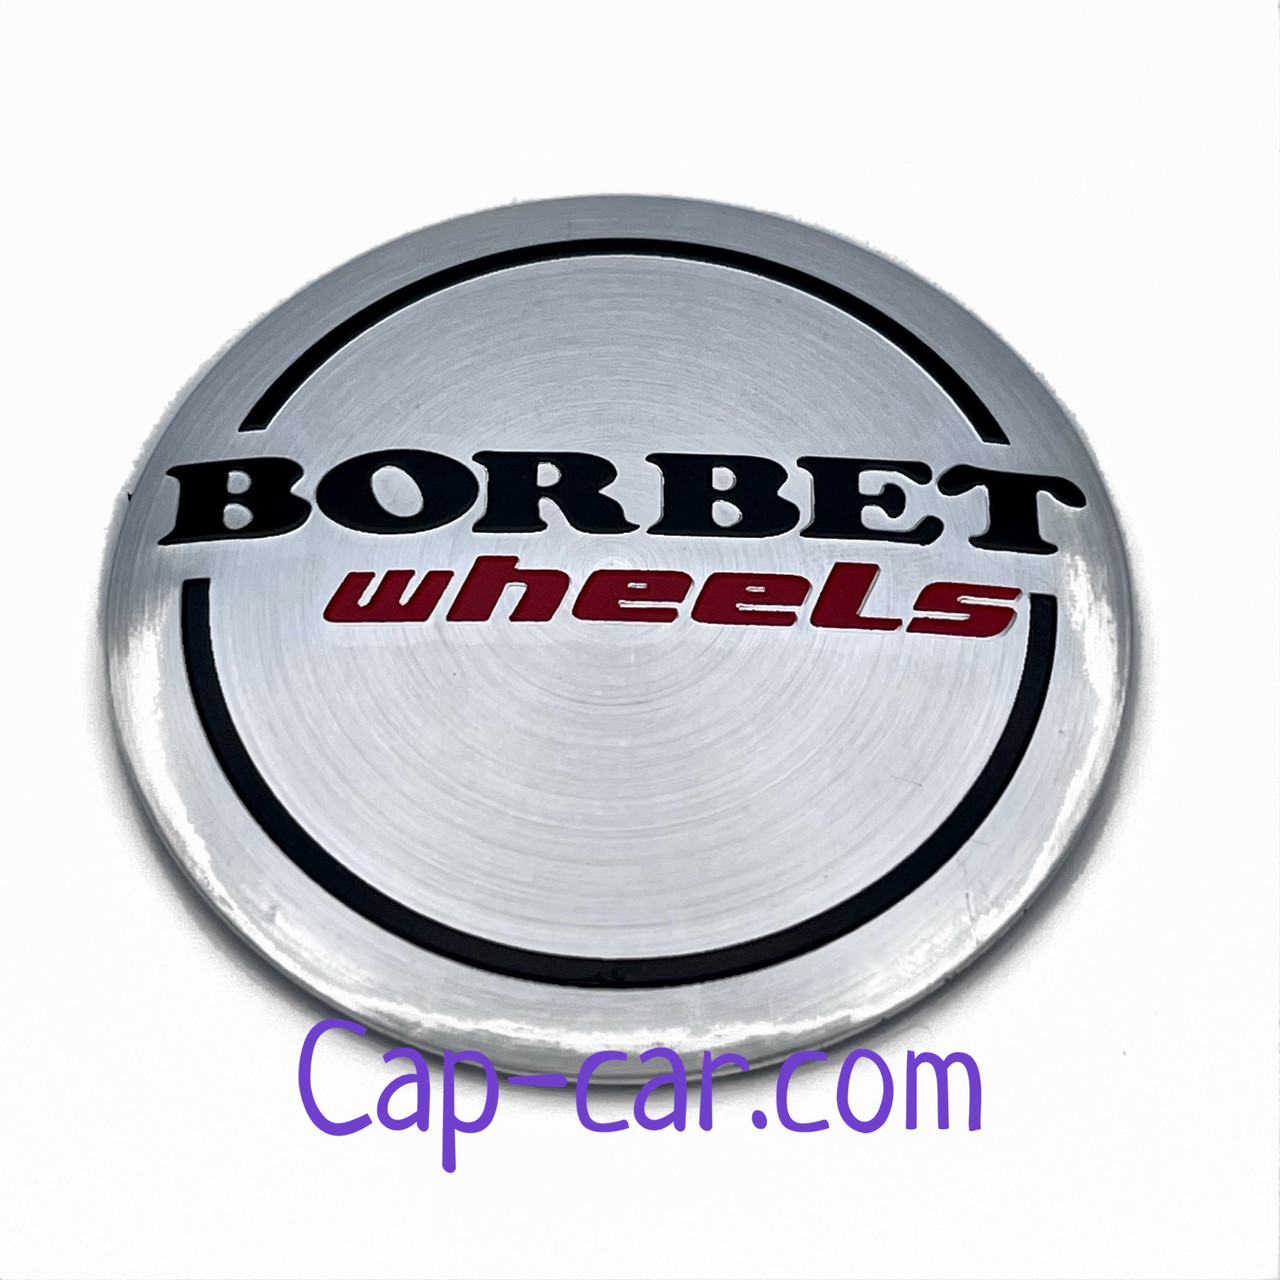 Наклейки для дисків з емблемою Borbet (Борбет). 56мм. Ціна вказана за комплект з 4-х штук